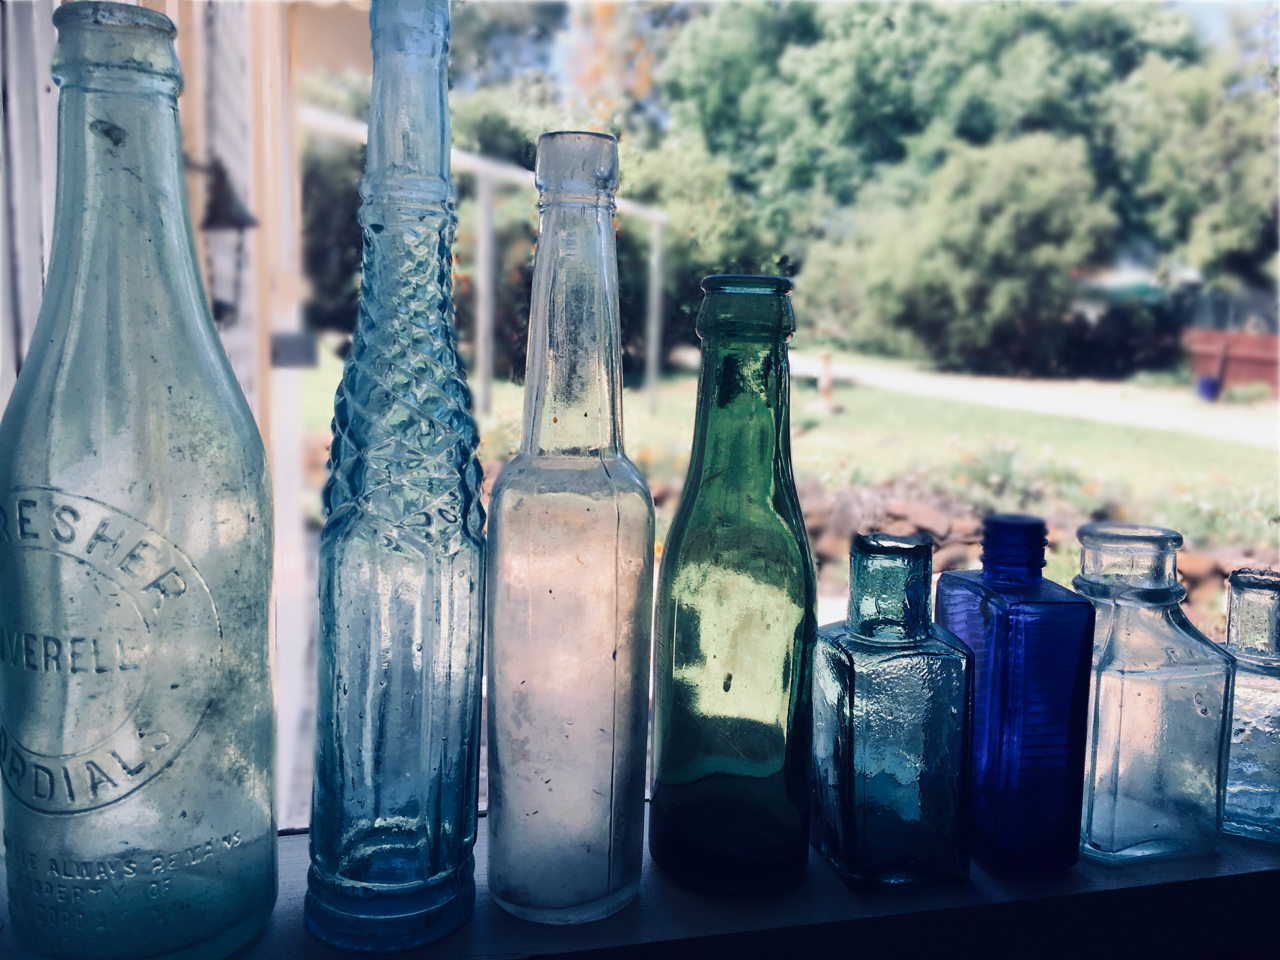 bottles in the window